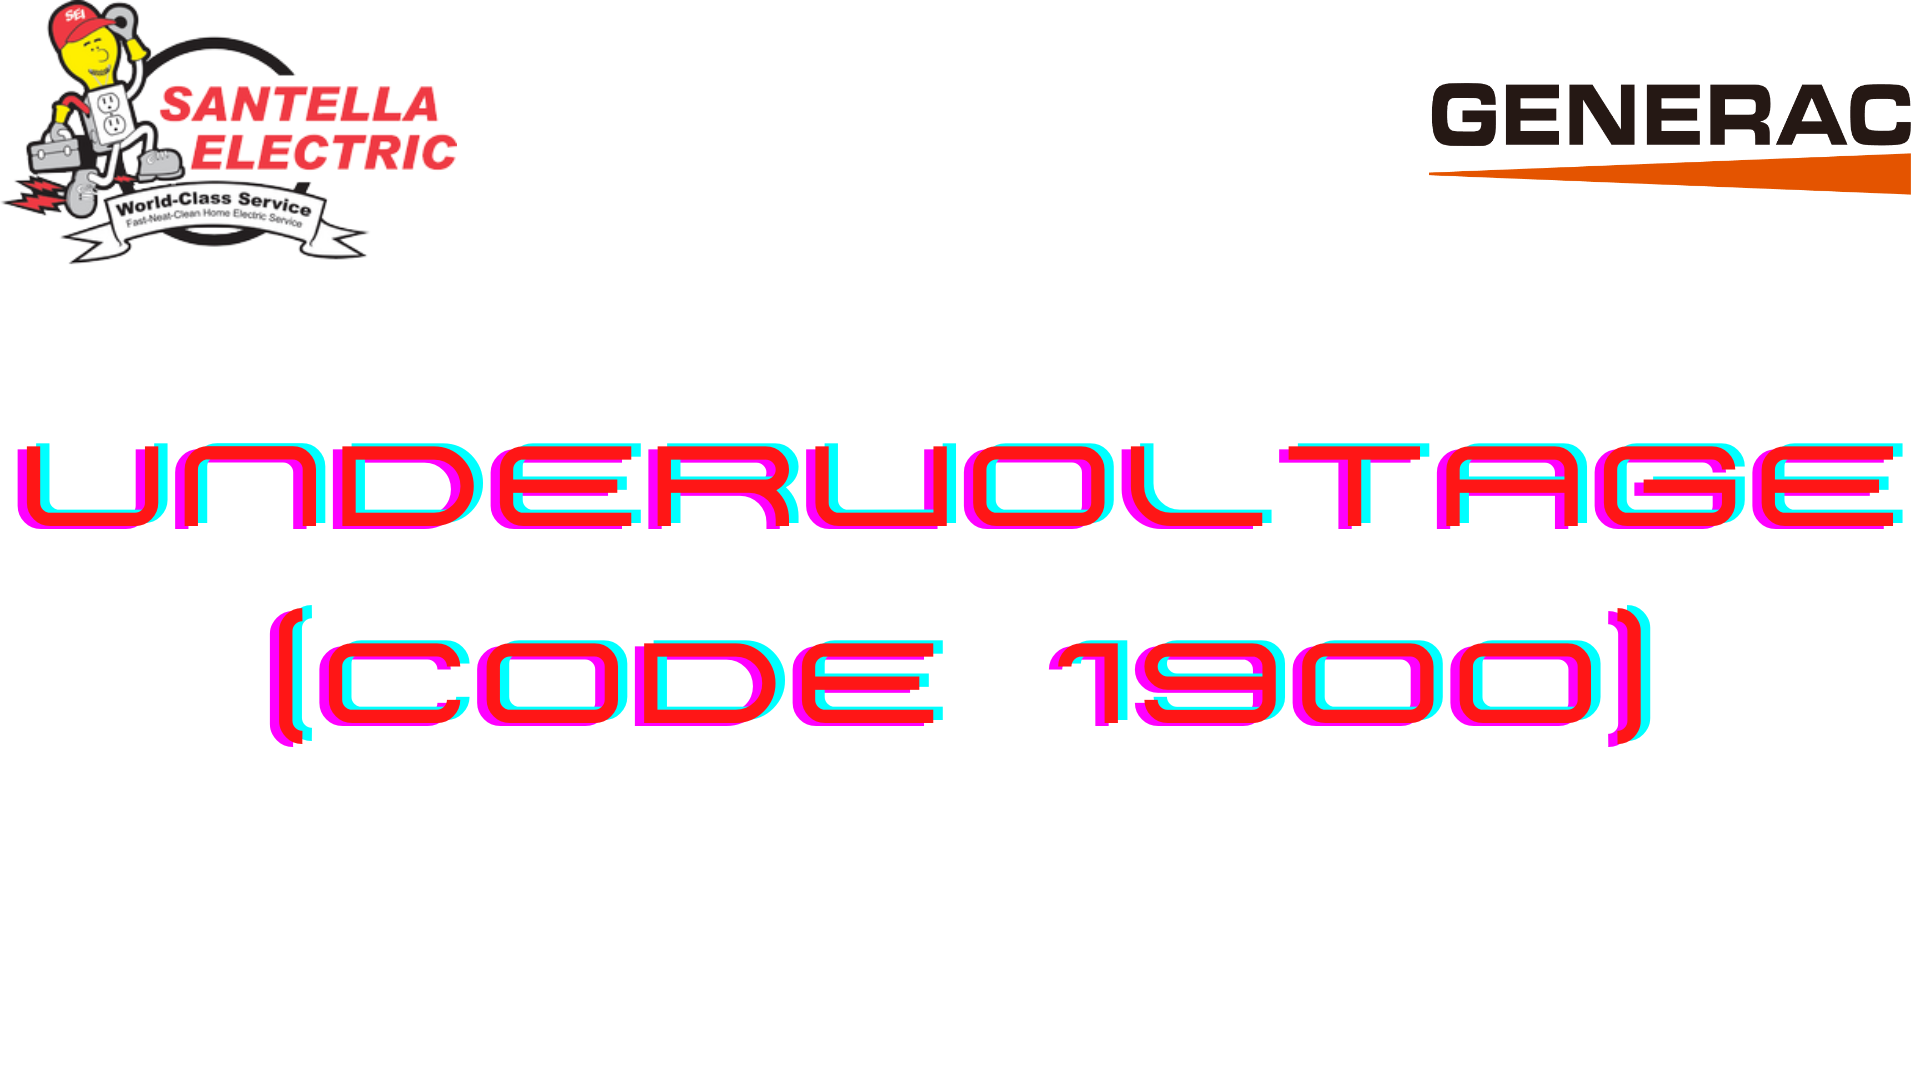 Generac Error Code - Undervoltage (Code 1900)